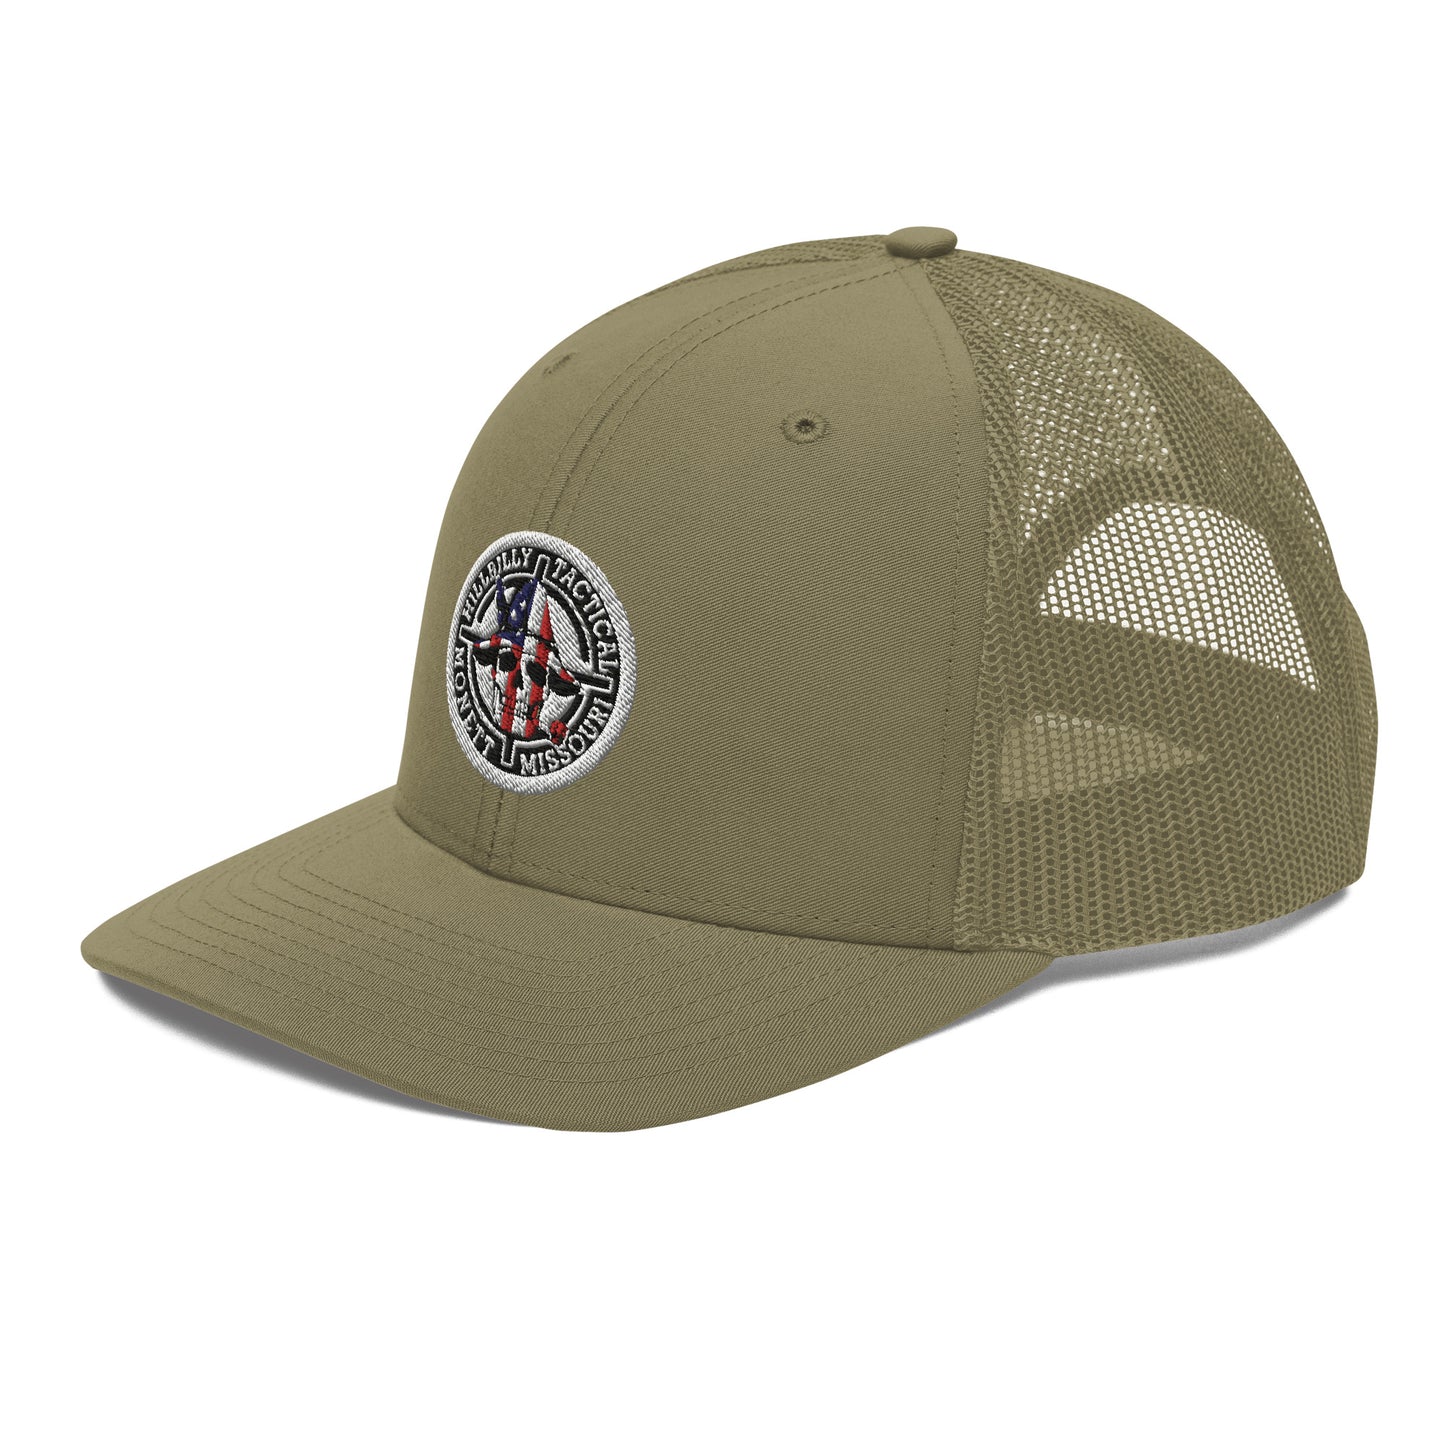 USA Hillbilly Tactical Logo Trucker Cap